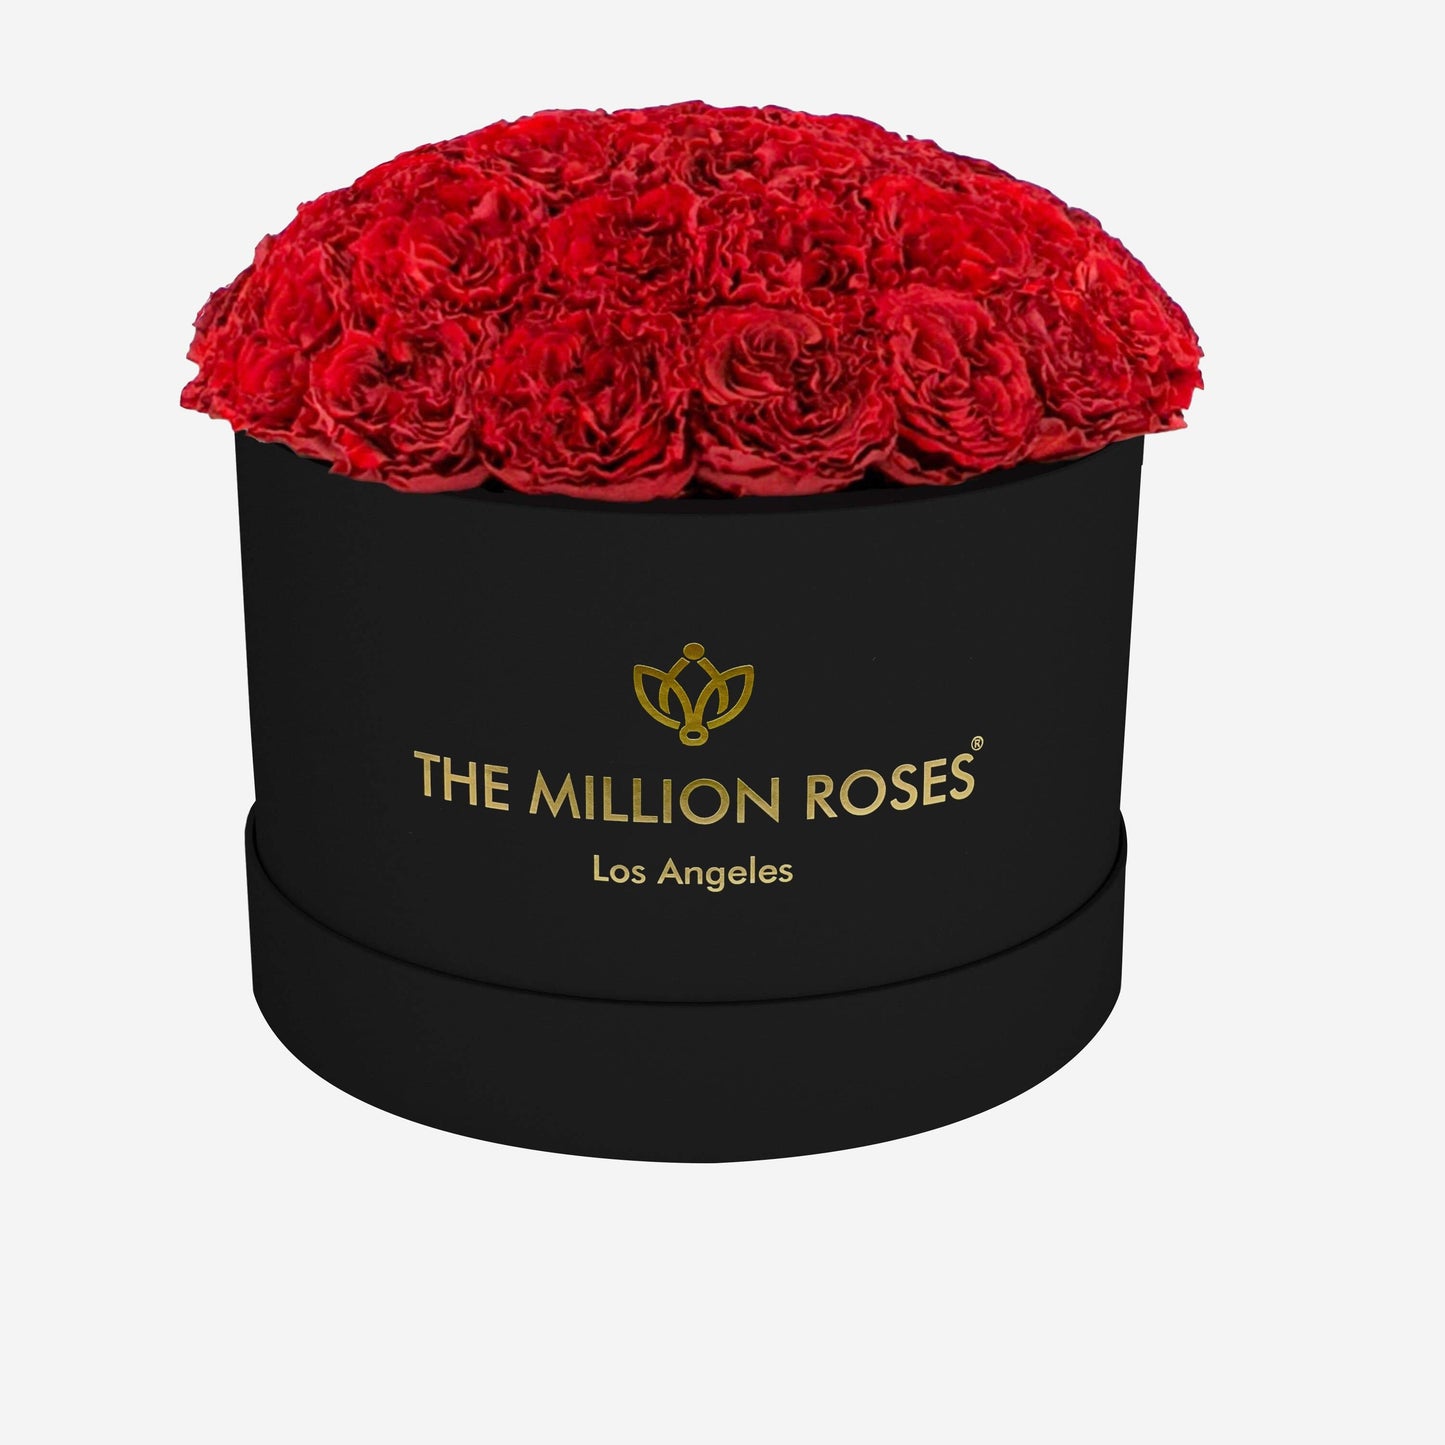 Supreme Black Dome Box | Red Carmen Roses - The Million Roses